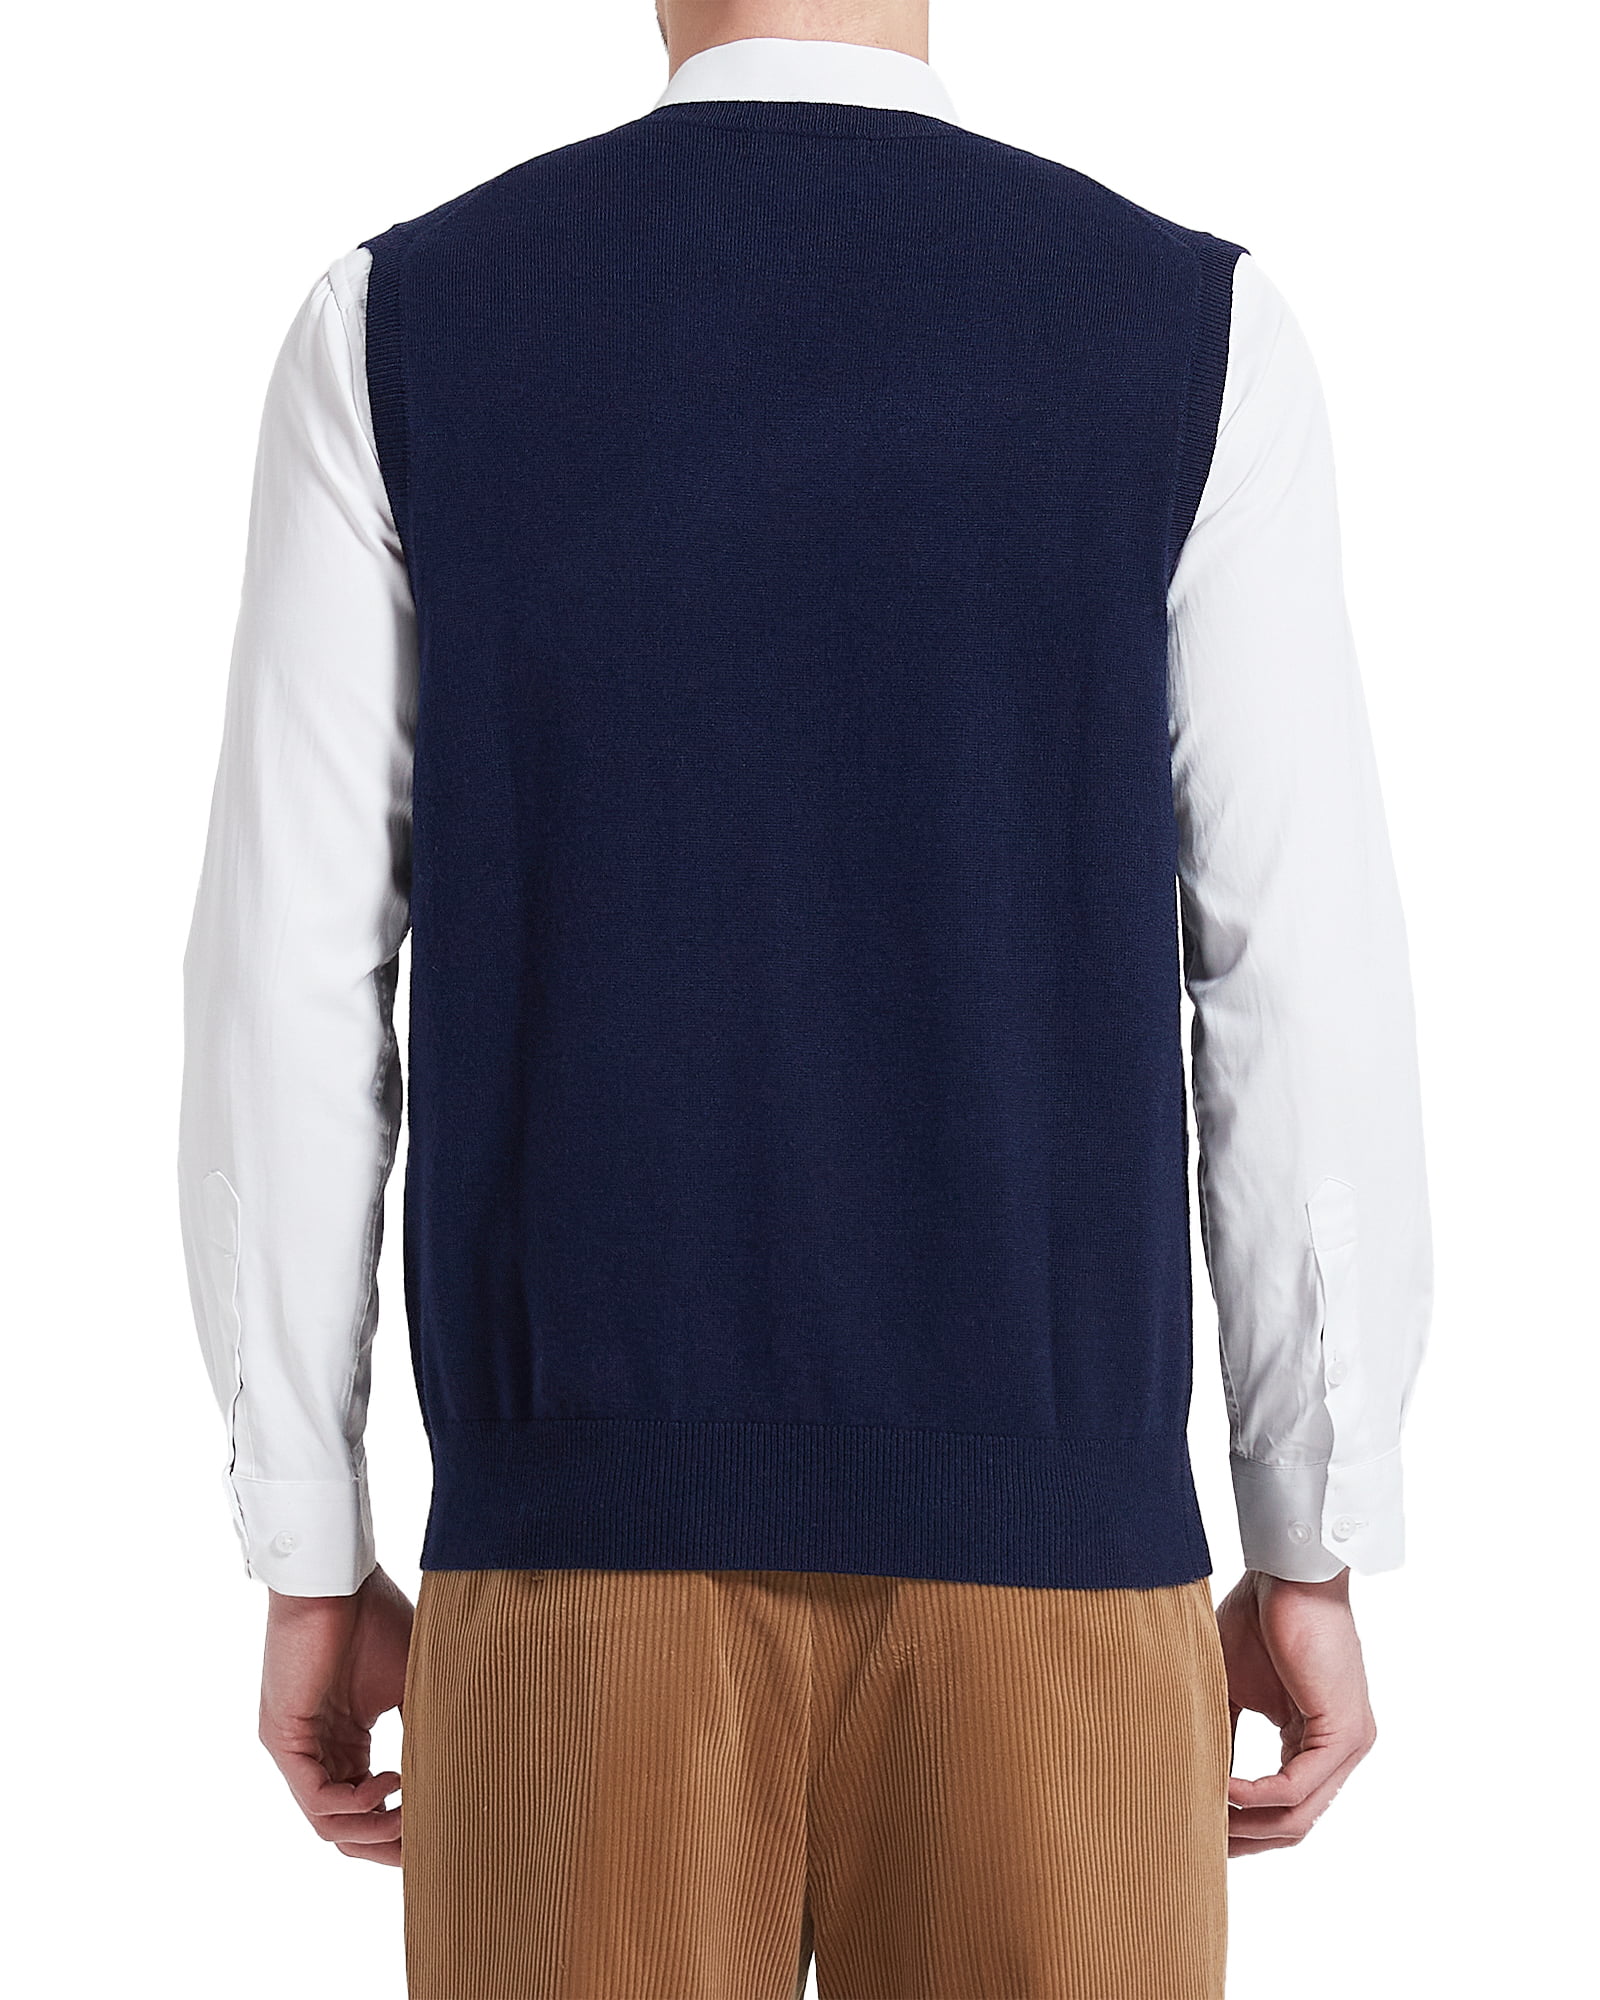 Kallspin Men\'s Vest Sweater Wool Blend Lightweight V Neck Sleeveless  Pullover(Burgundy Red,X-Large)